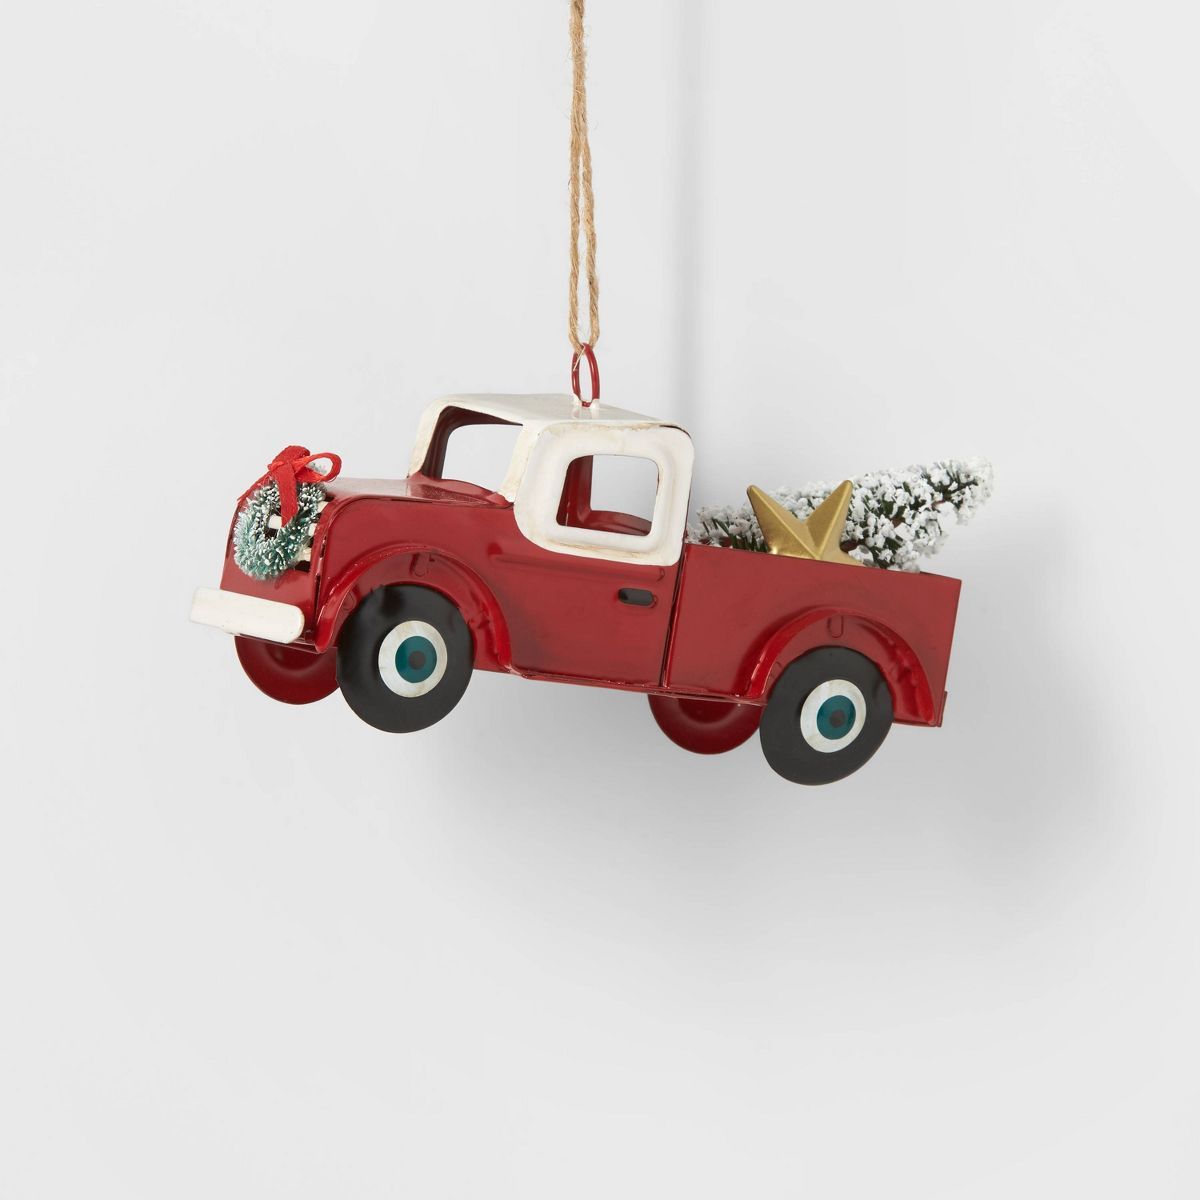 Truck Christmas Tree Ornament - Red - Wondershop™ | Target